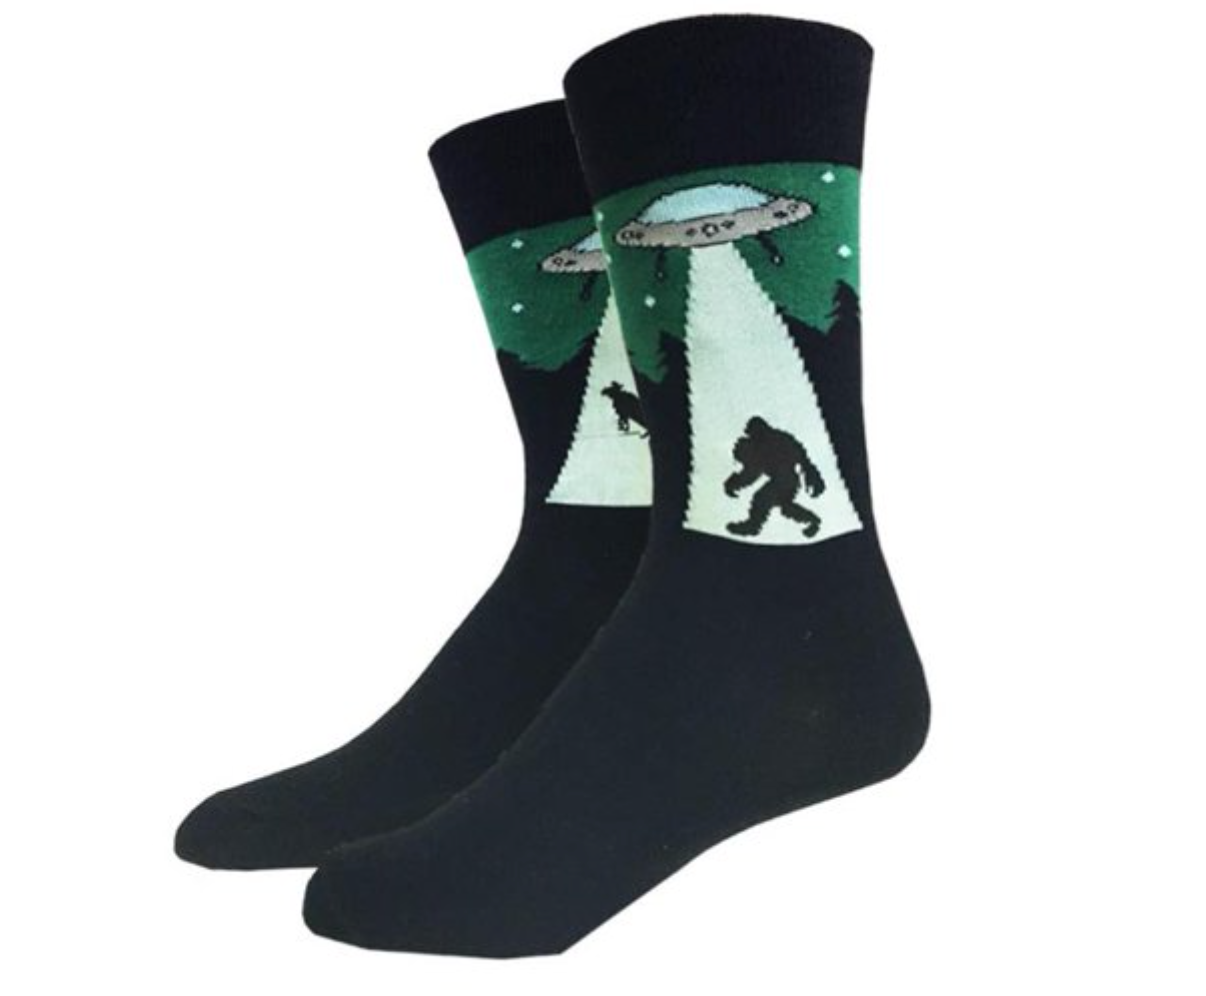 * Bigfoot Socks